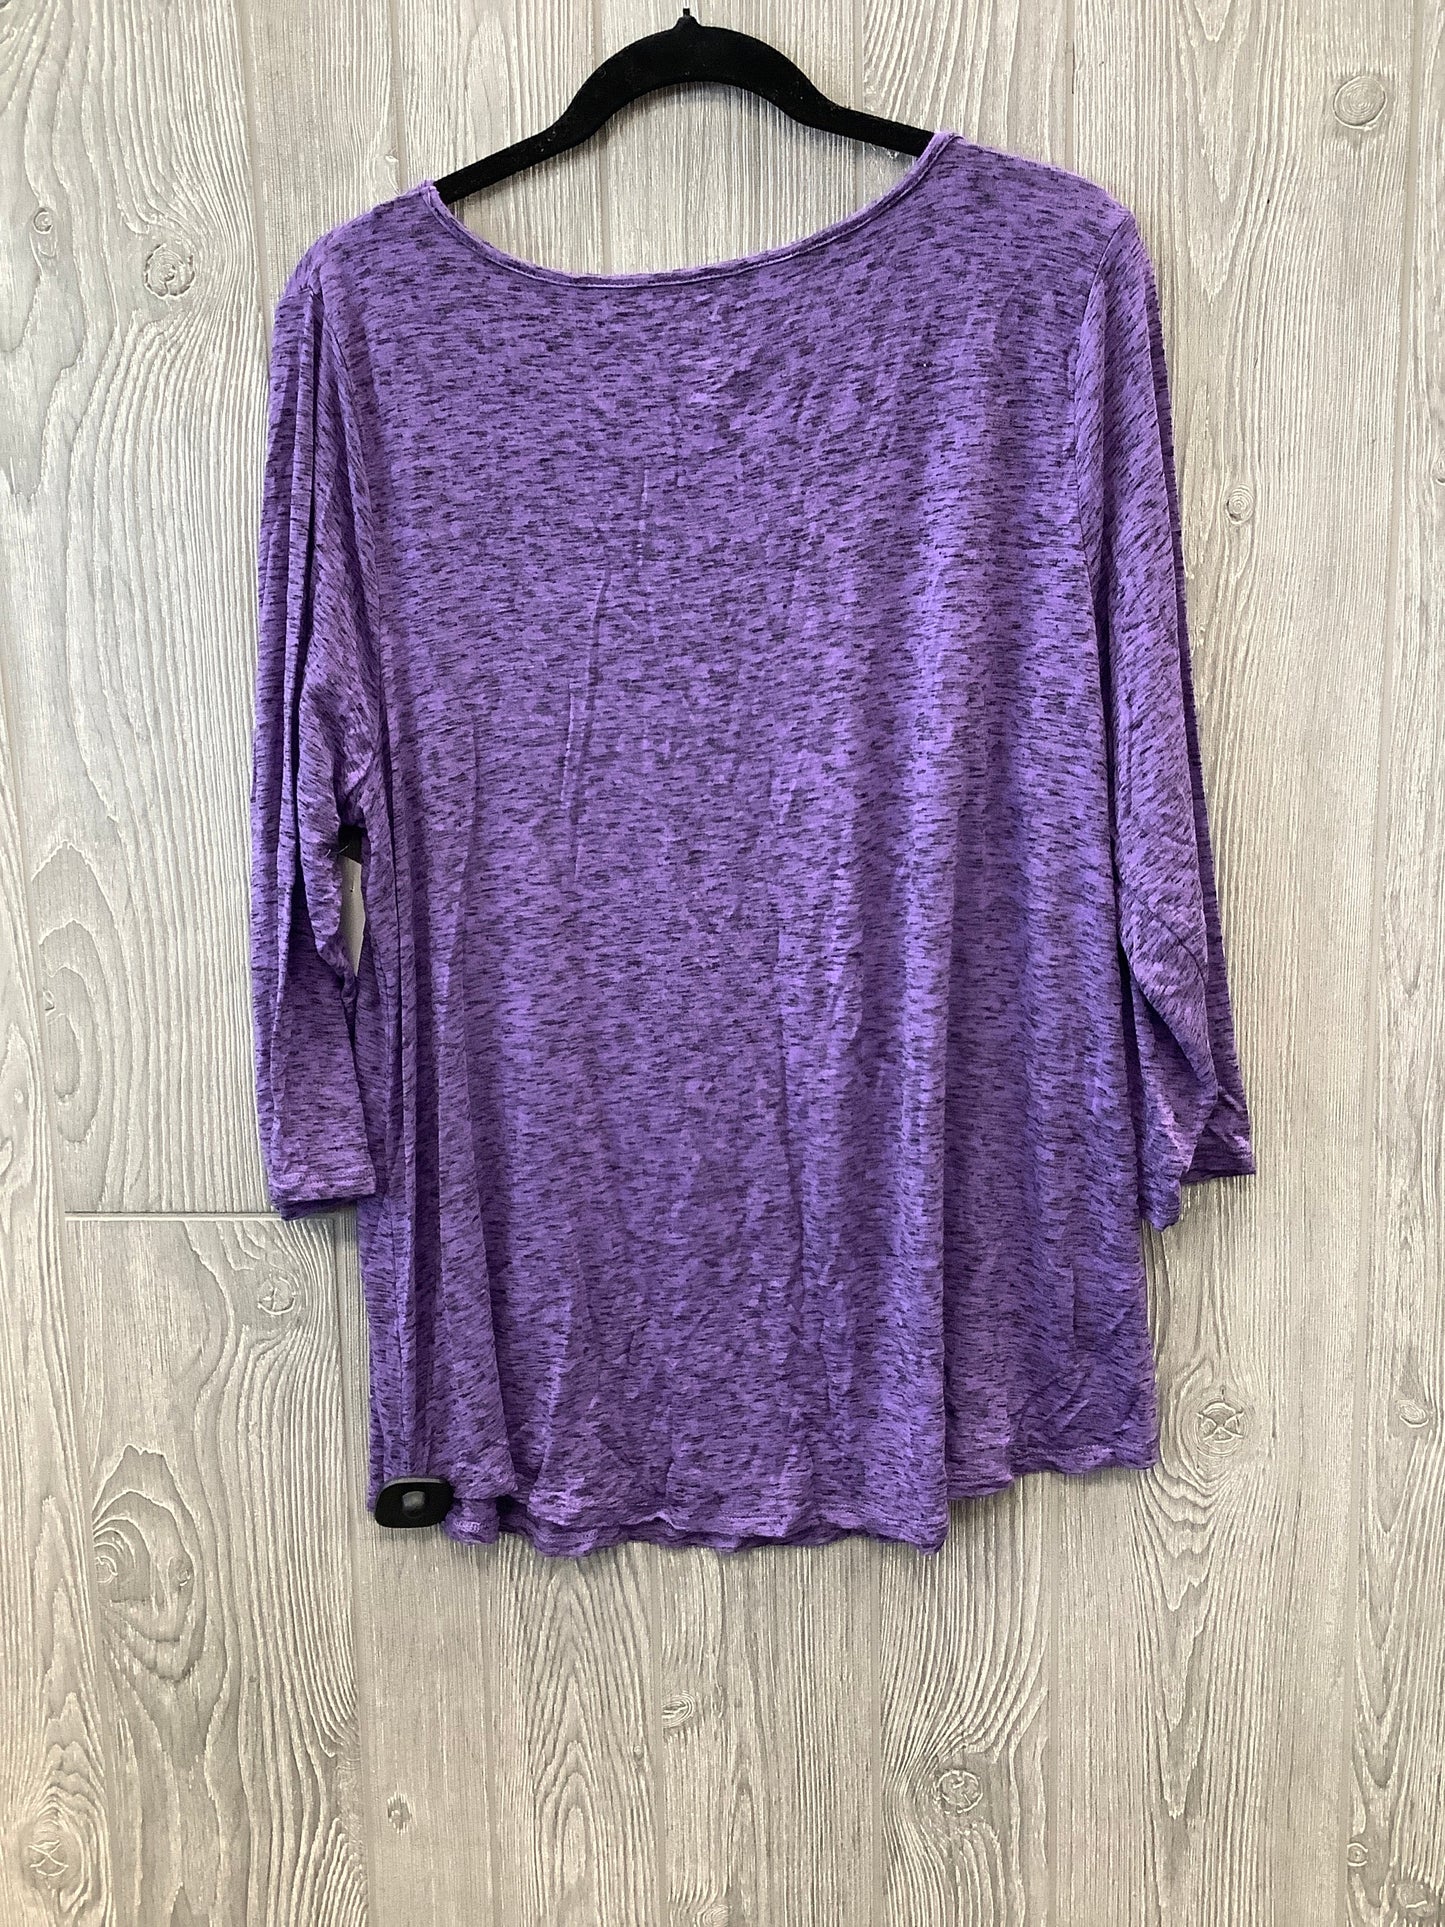 Purple Top 3/4 Sleeve Evri, Size 1x